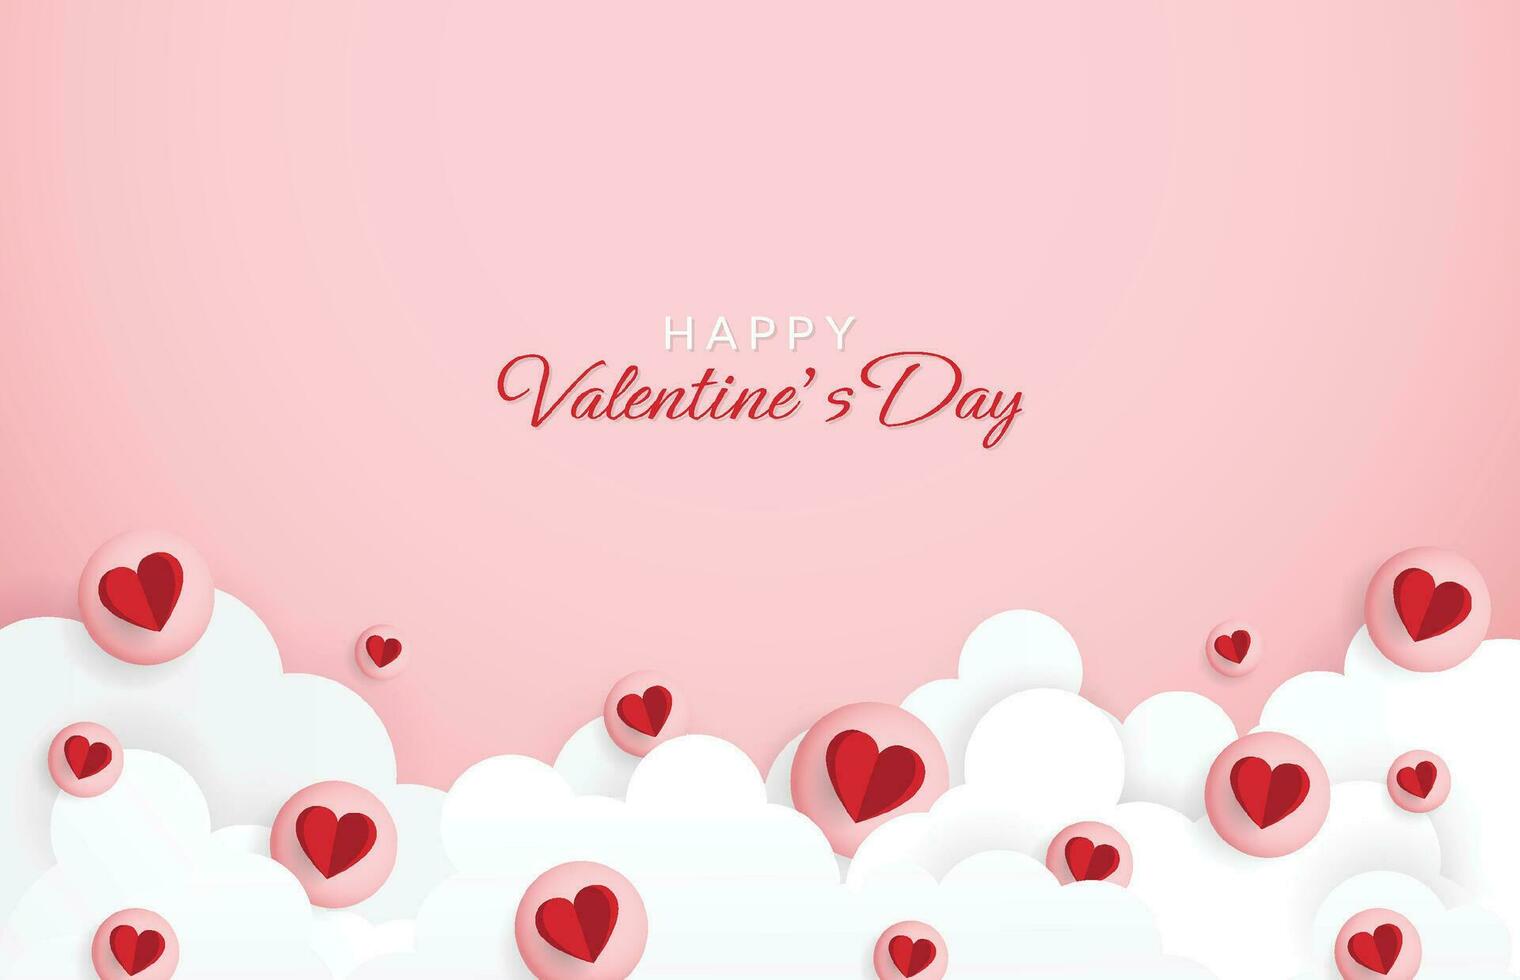 fijne Valentijnsdag. met creatieve liefdesamenstelling van de harten. vector illustratie